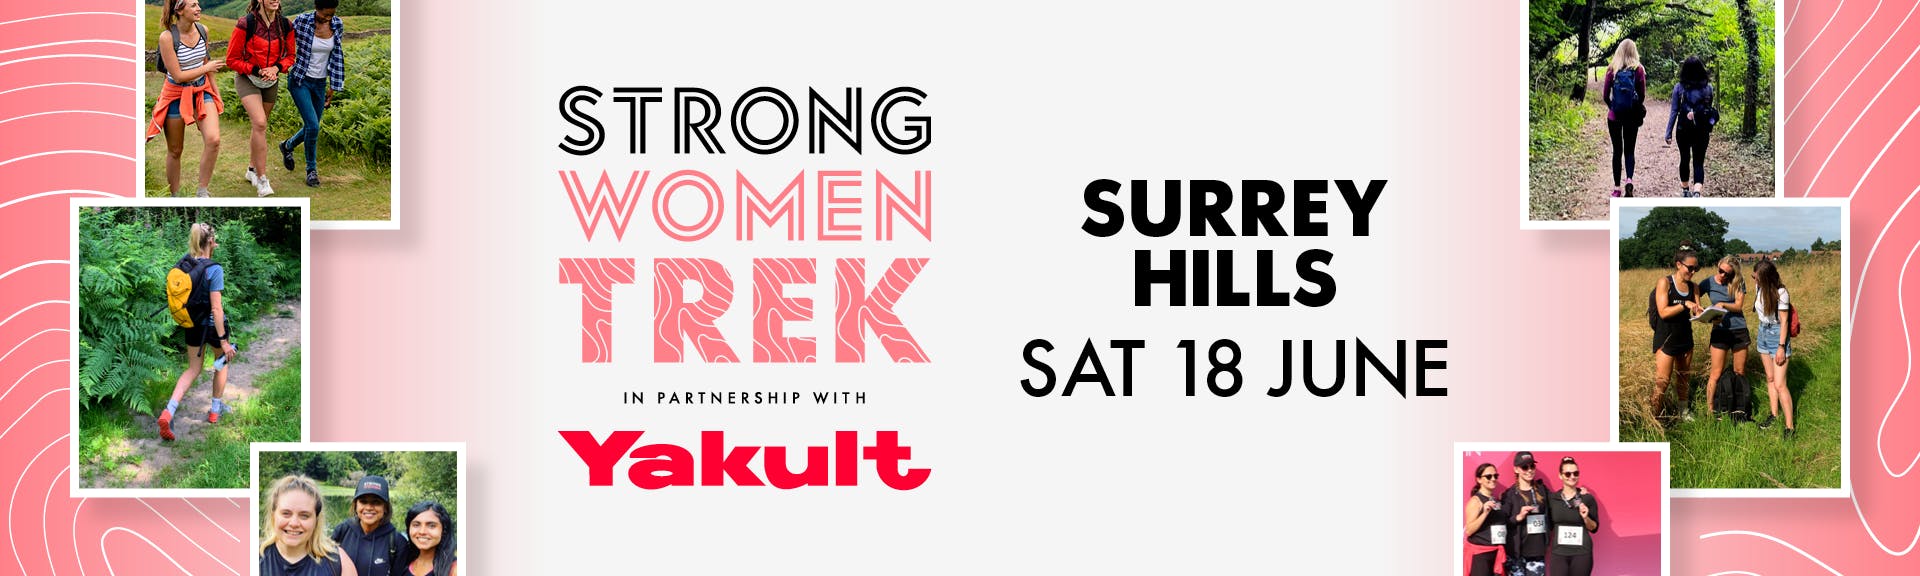 Strong Women Trek Surrey